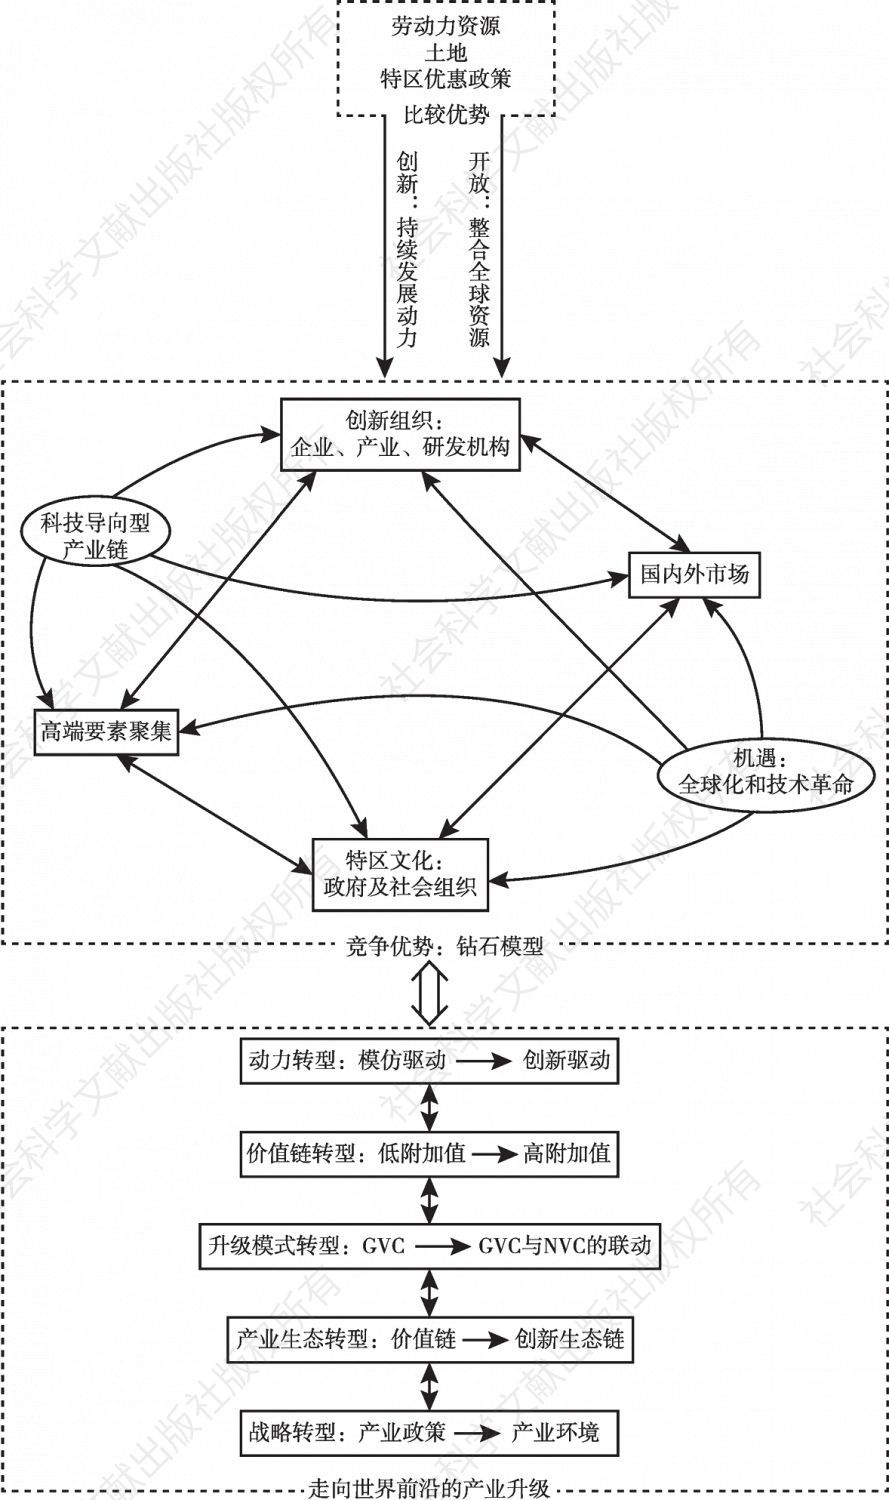 图4-1 中国经济特区优势转化下产业升级的理论框架